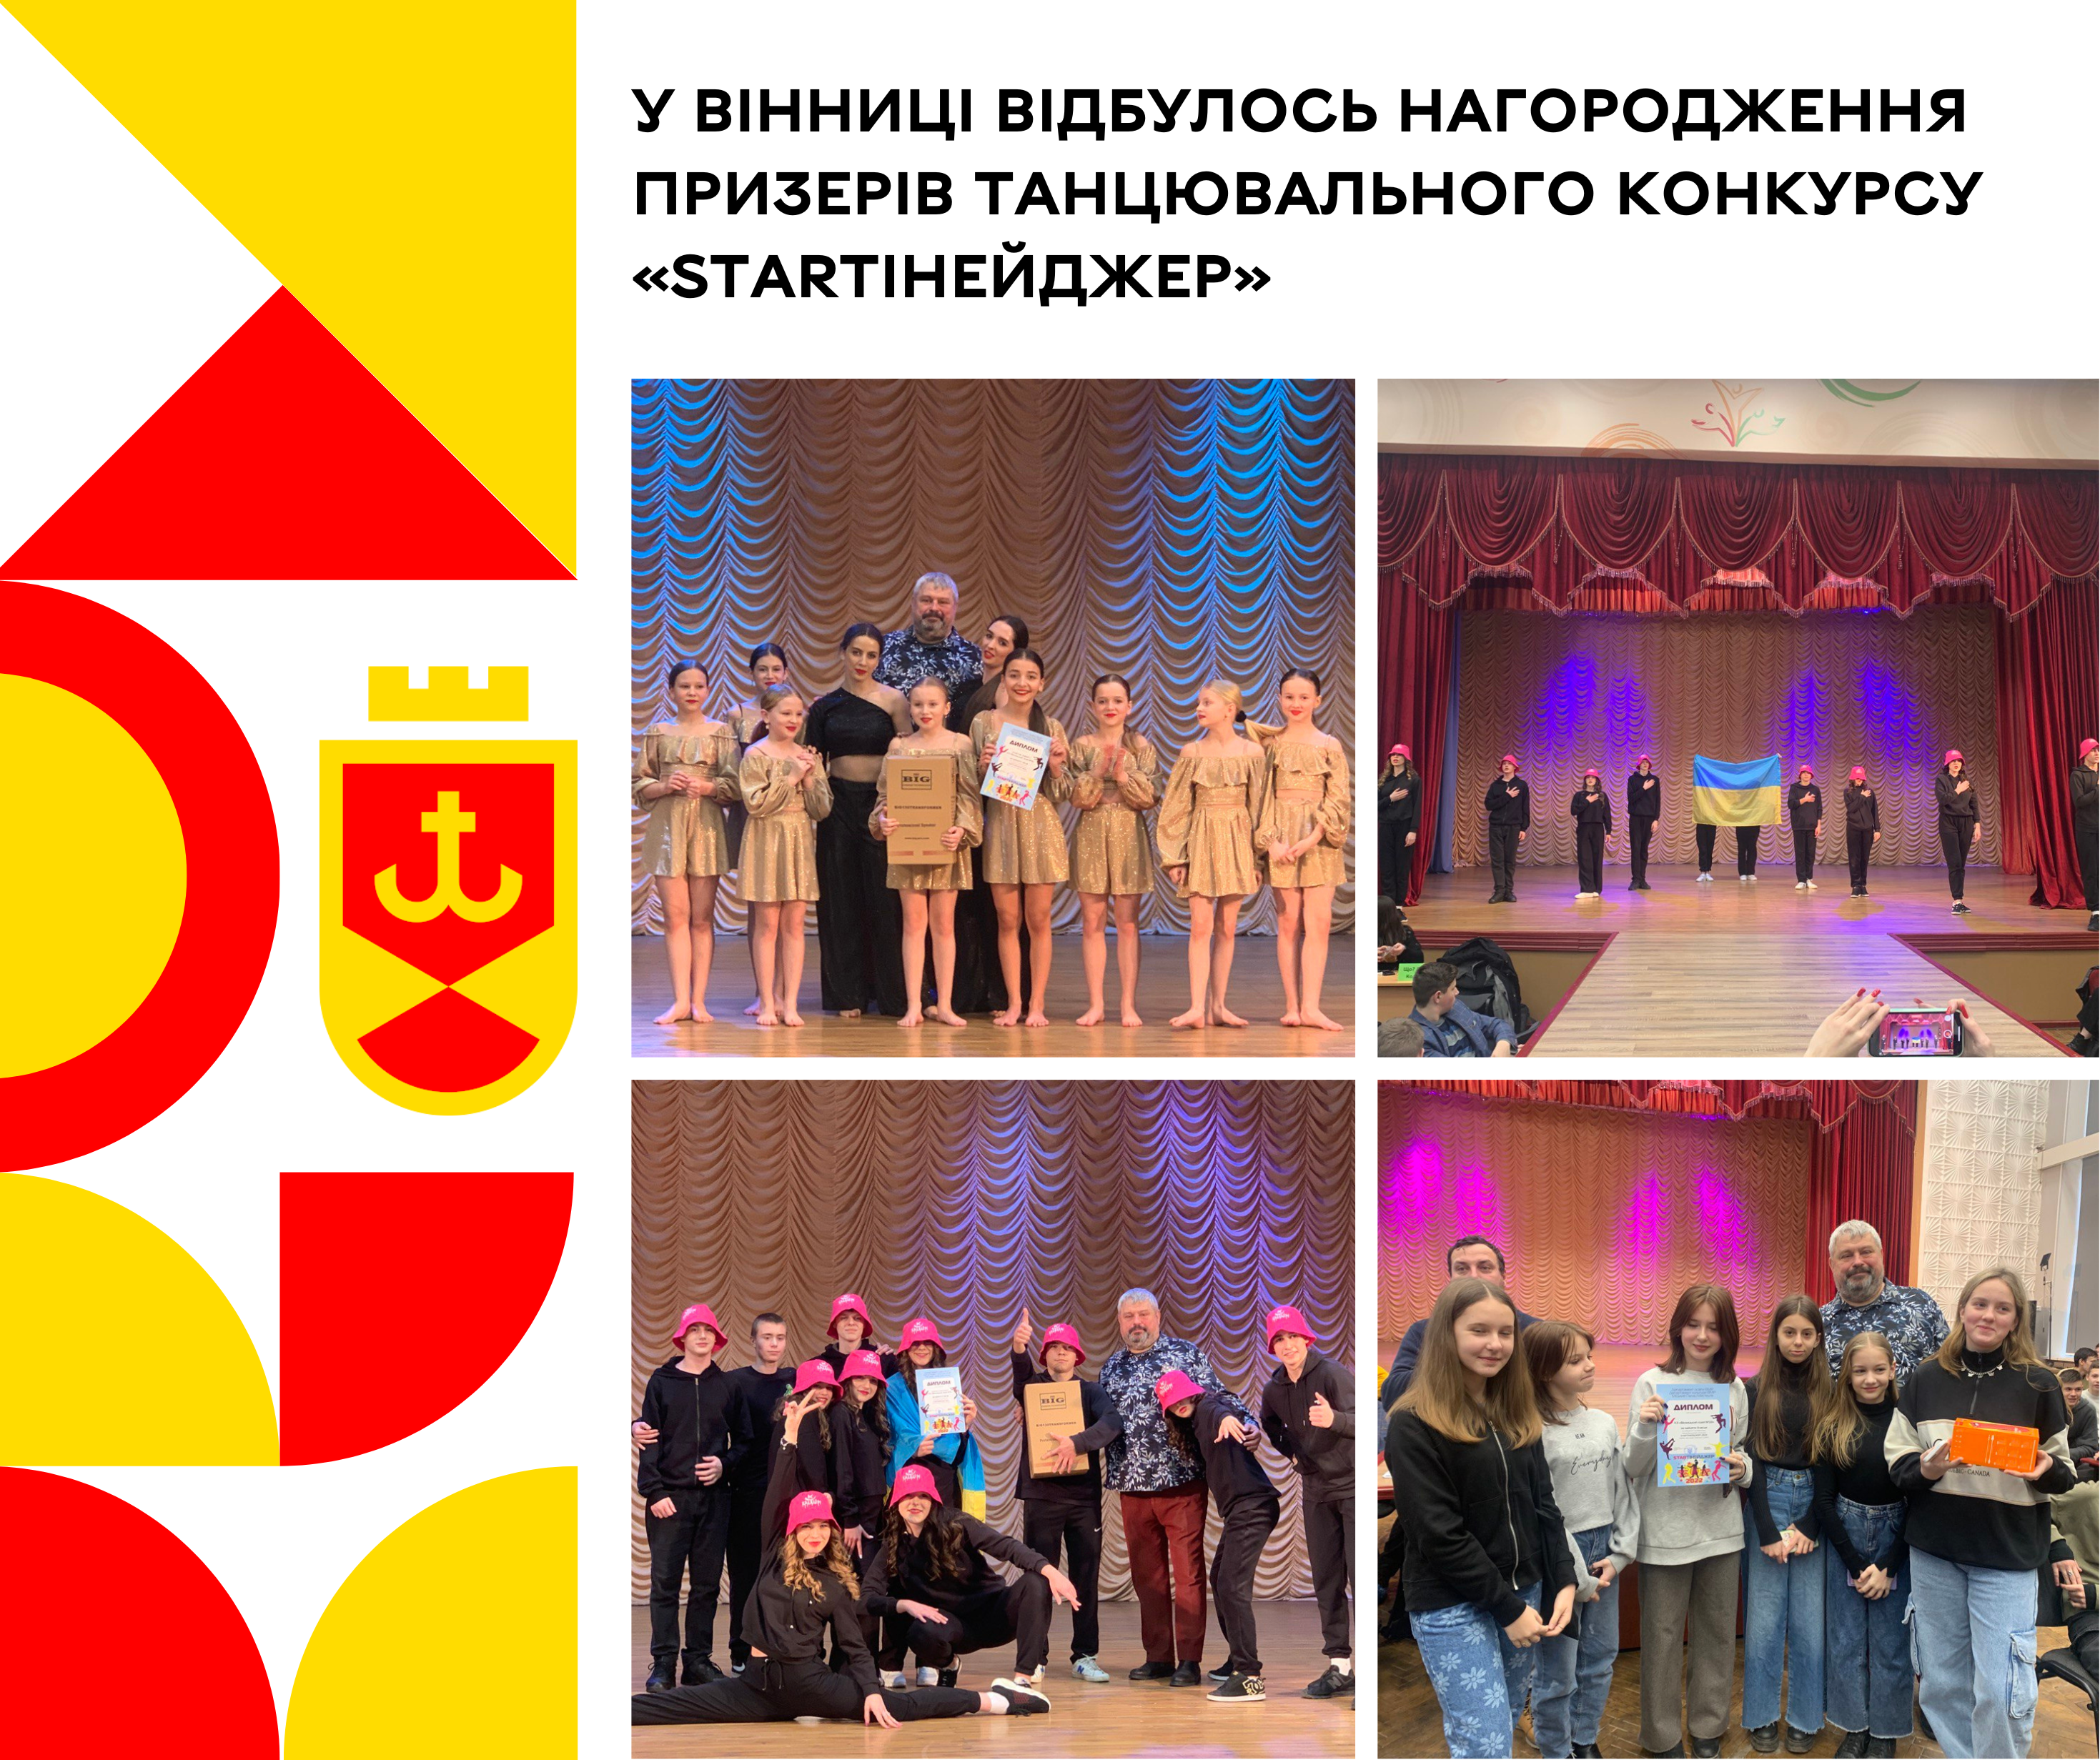 «StarТінейджер»: у Вінниці відбулось нагородження призерів танцювального конкурсу